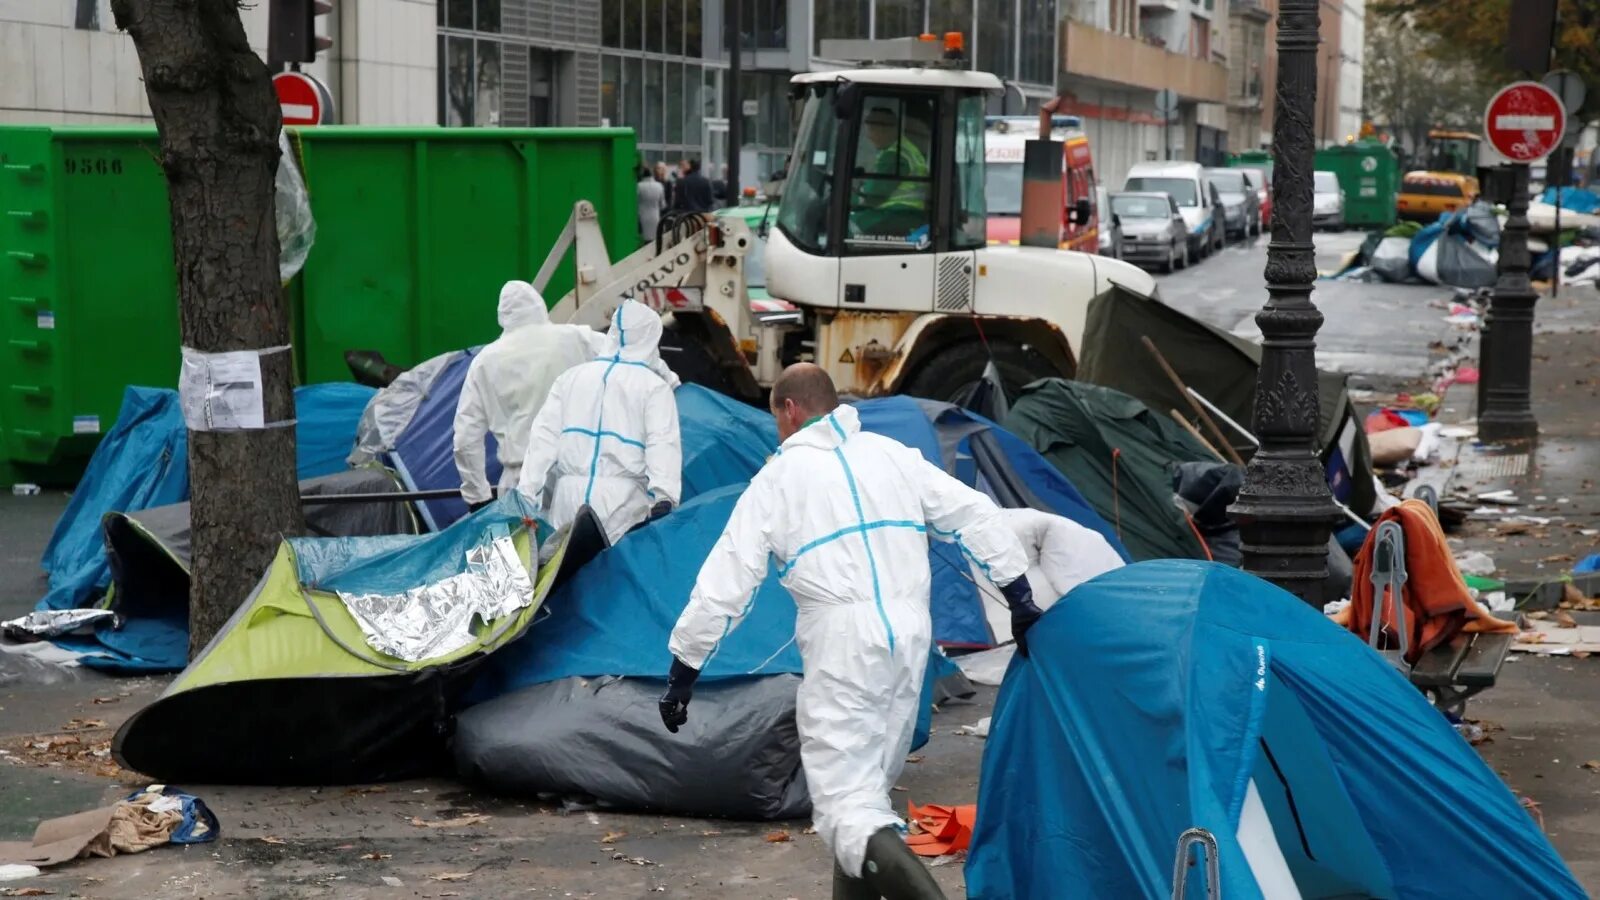 Бомжи в париже. Мигранты в палатках. Беженцы в Париже. Гетто мигрантов в Европе.